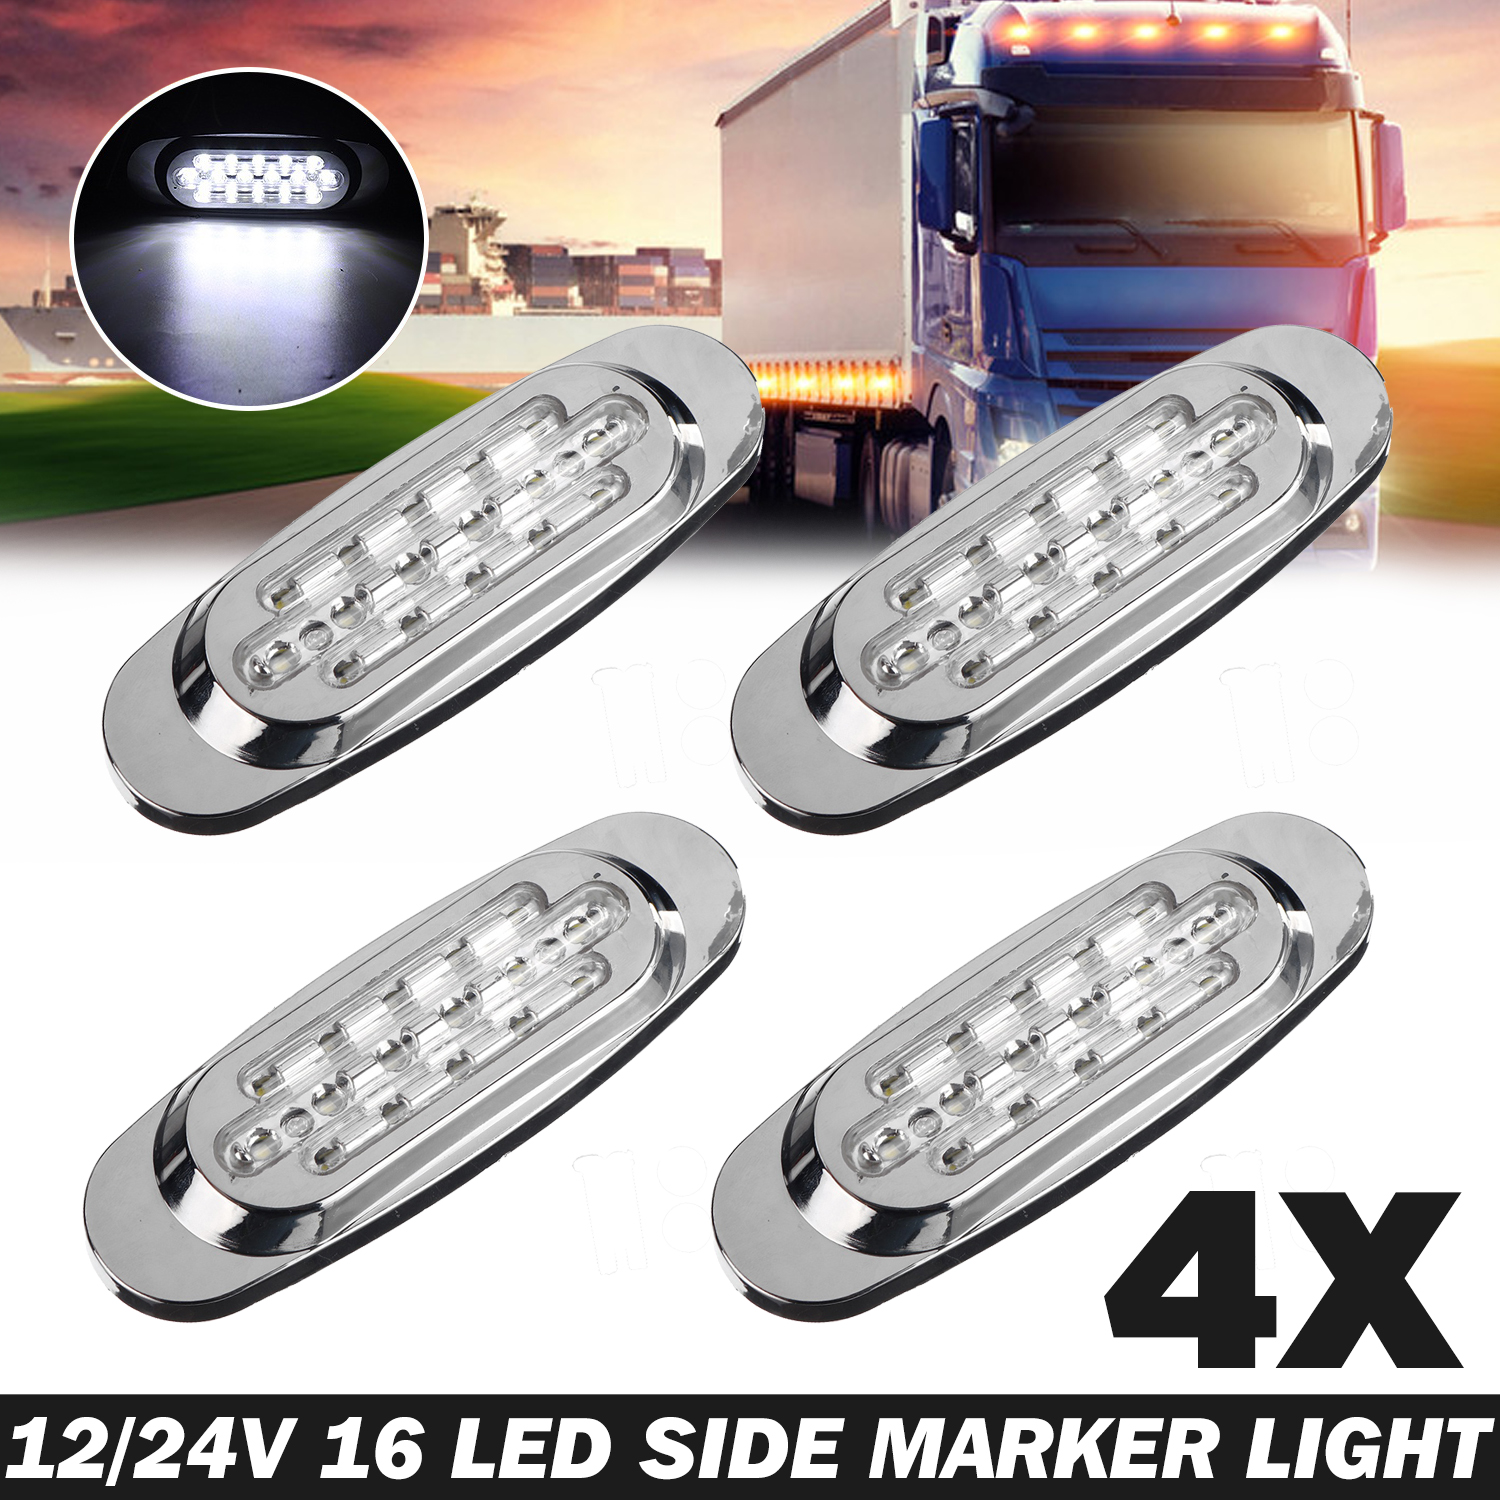 Lampe supérieure Led 24V pour camion, 1 pièce, compatible avec les modèles  af XF106 XF530